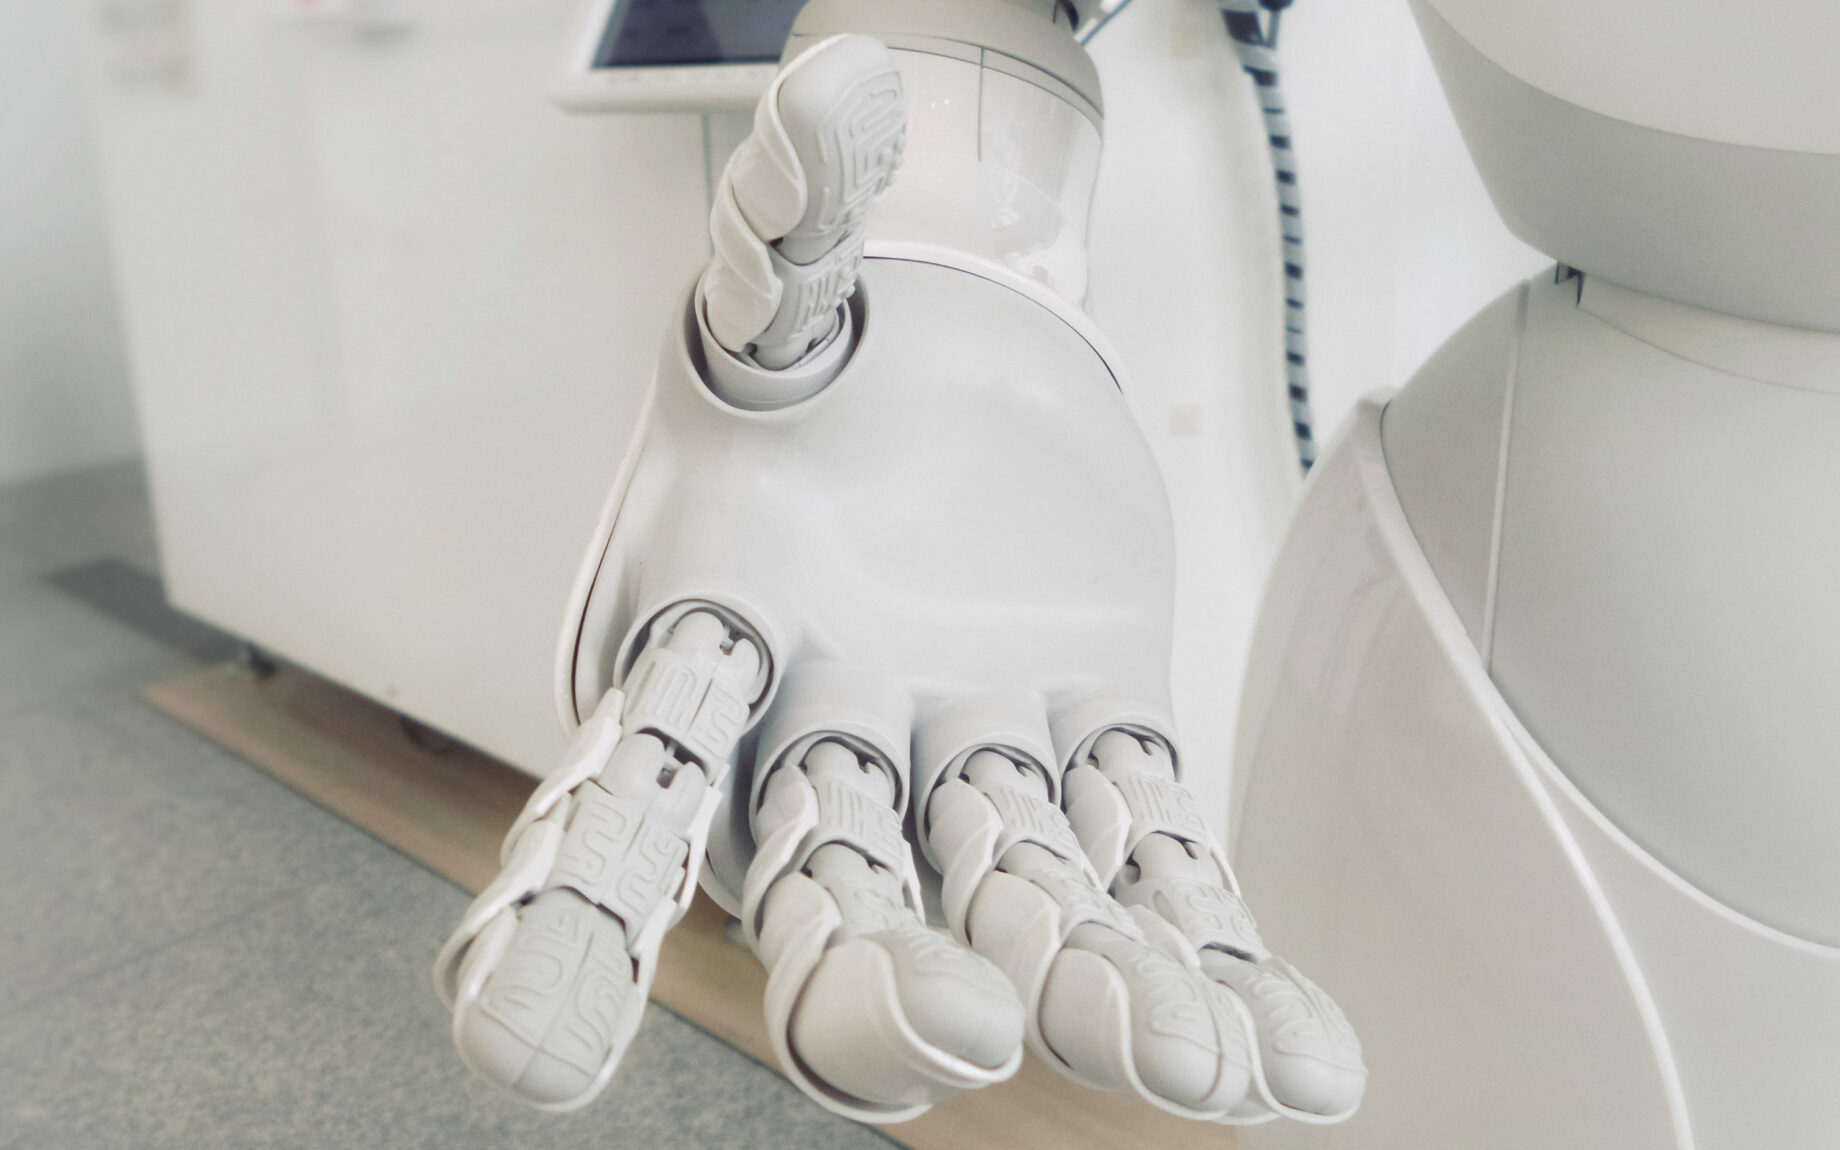 Bild einer Roboterhand zum valantic Blogbeitrag "Process Automation"